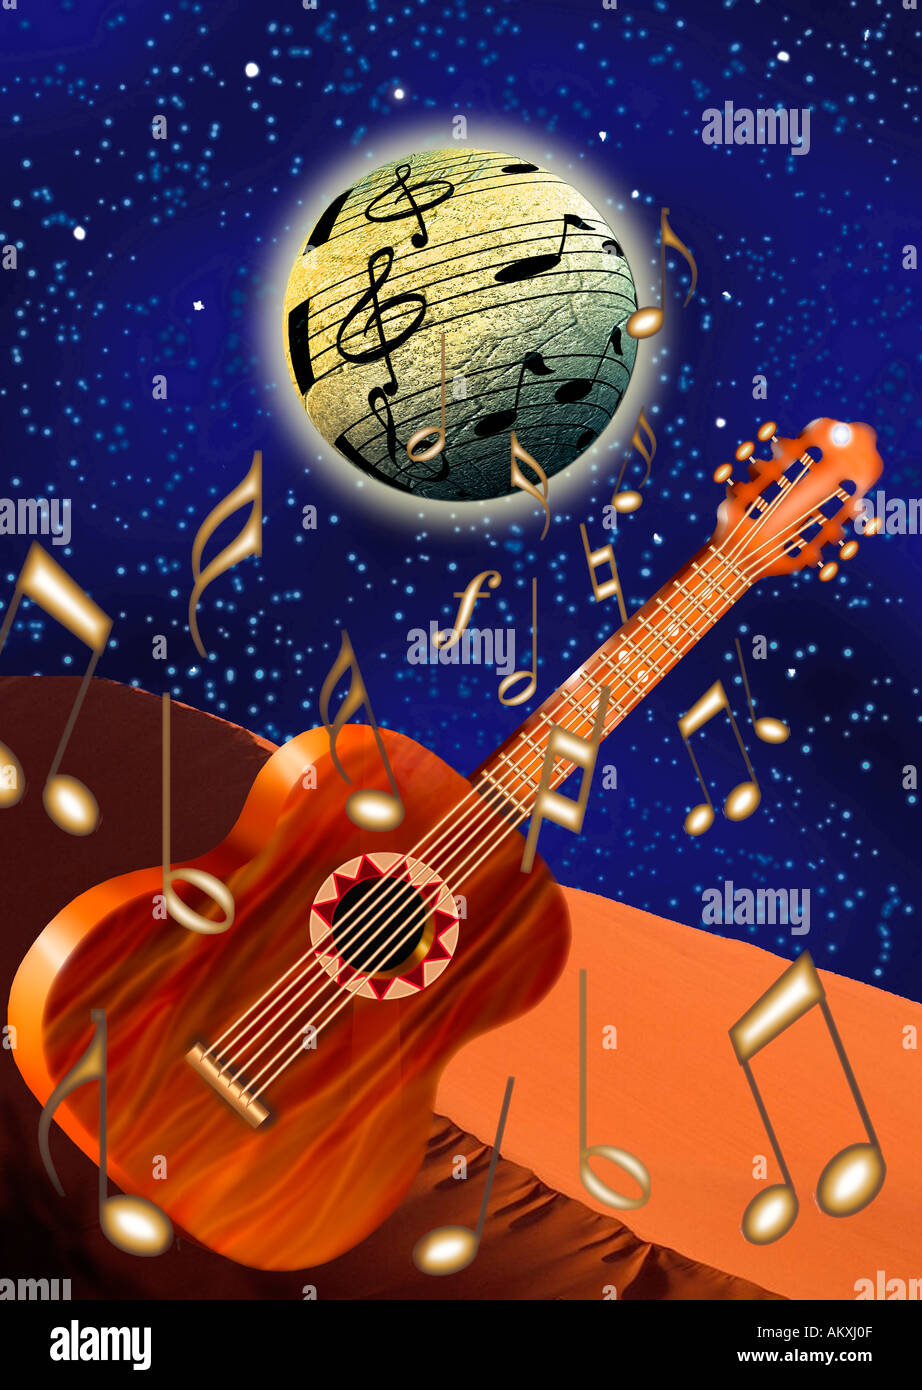 Moon chitarra immagini e fotografie stock ad alta risoluzione - Alamy